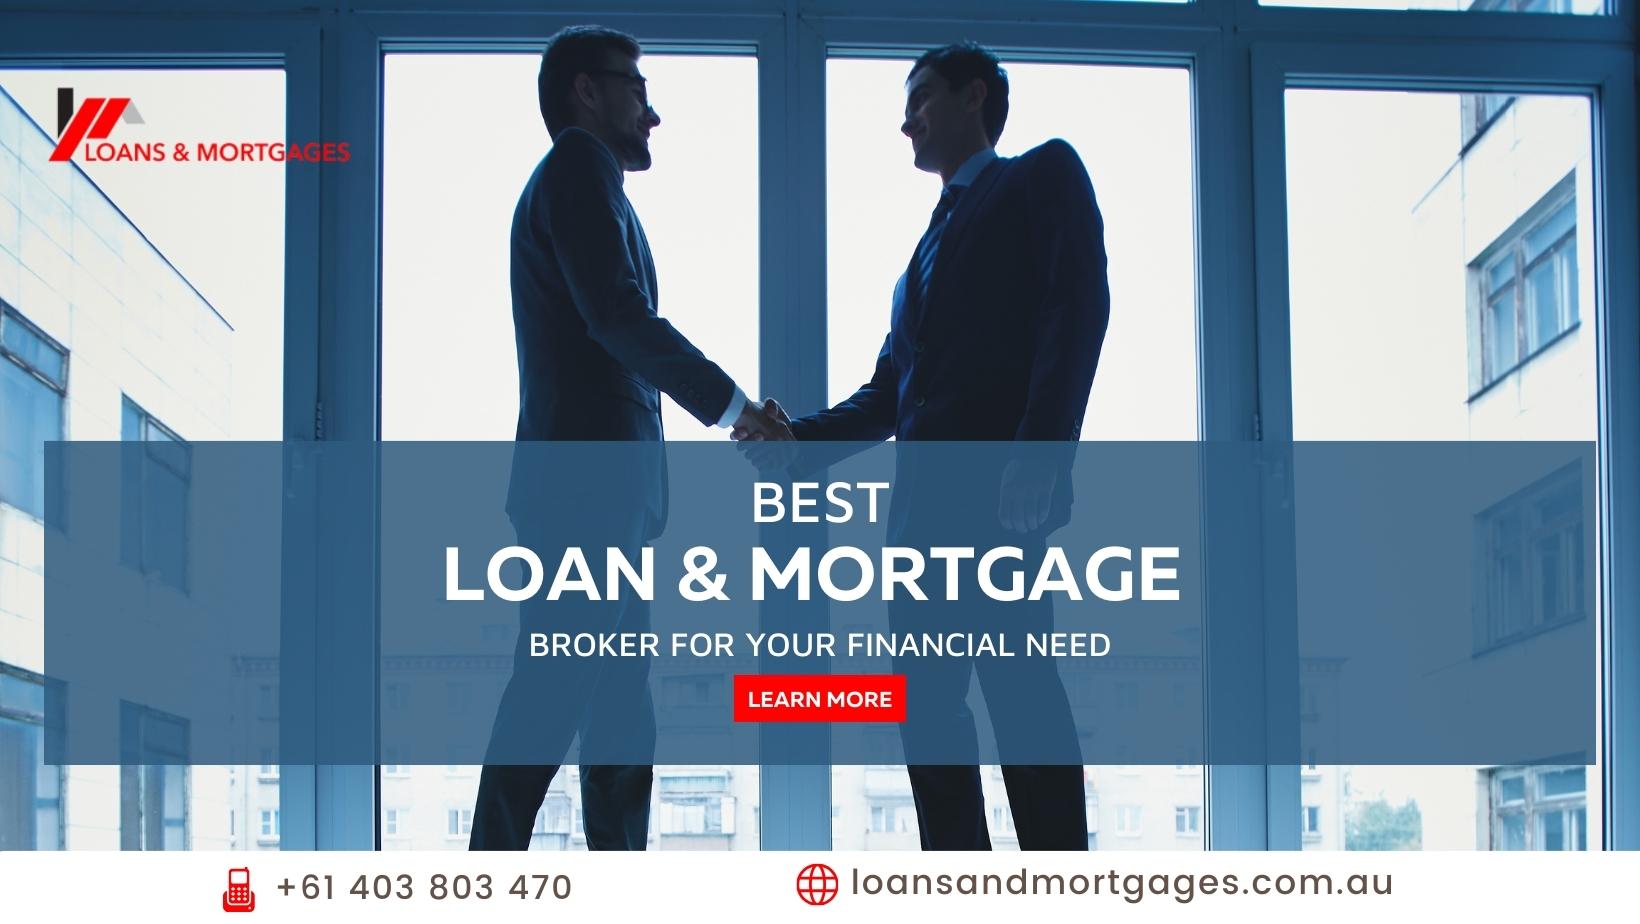 Loans & Mortagage